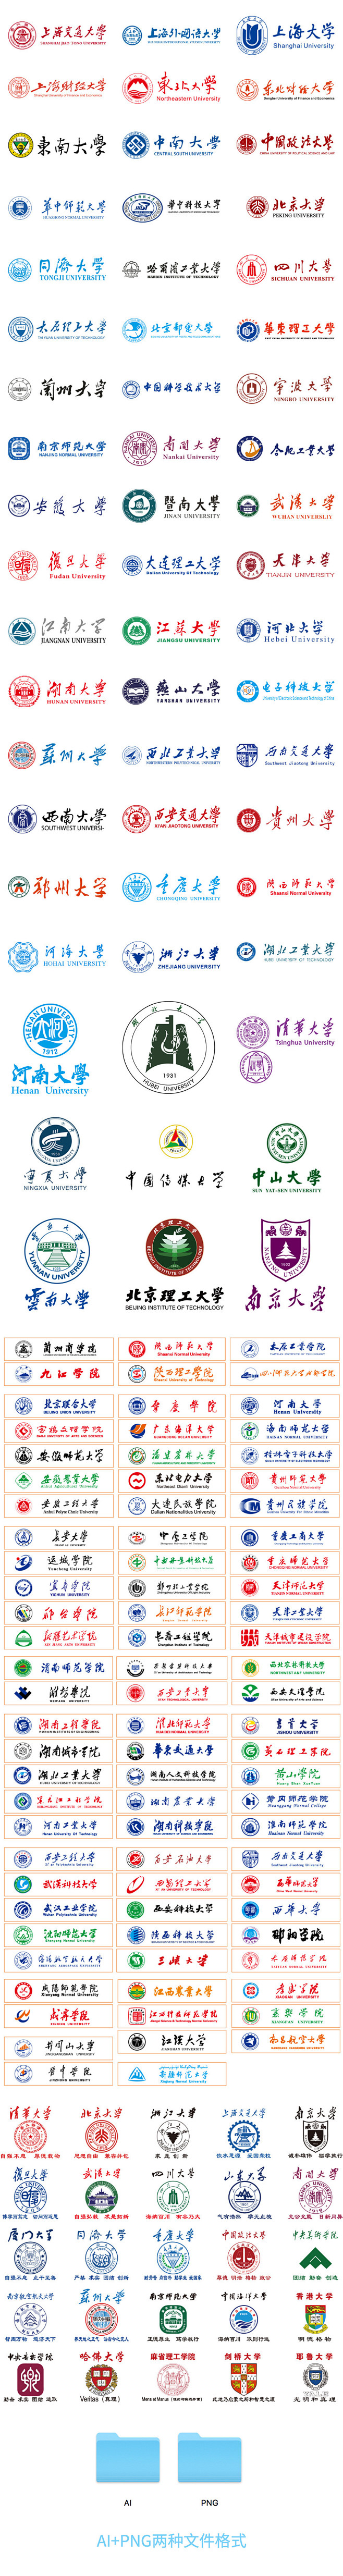 中国所有大学校徽图片